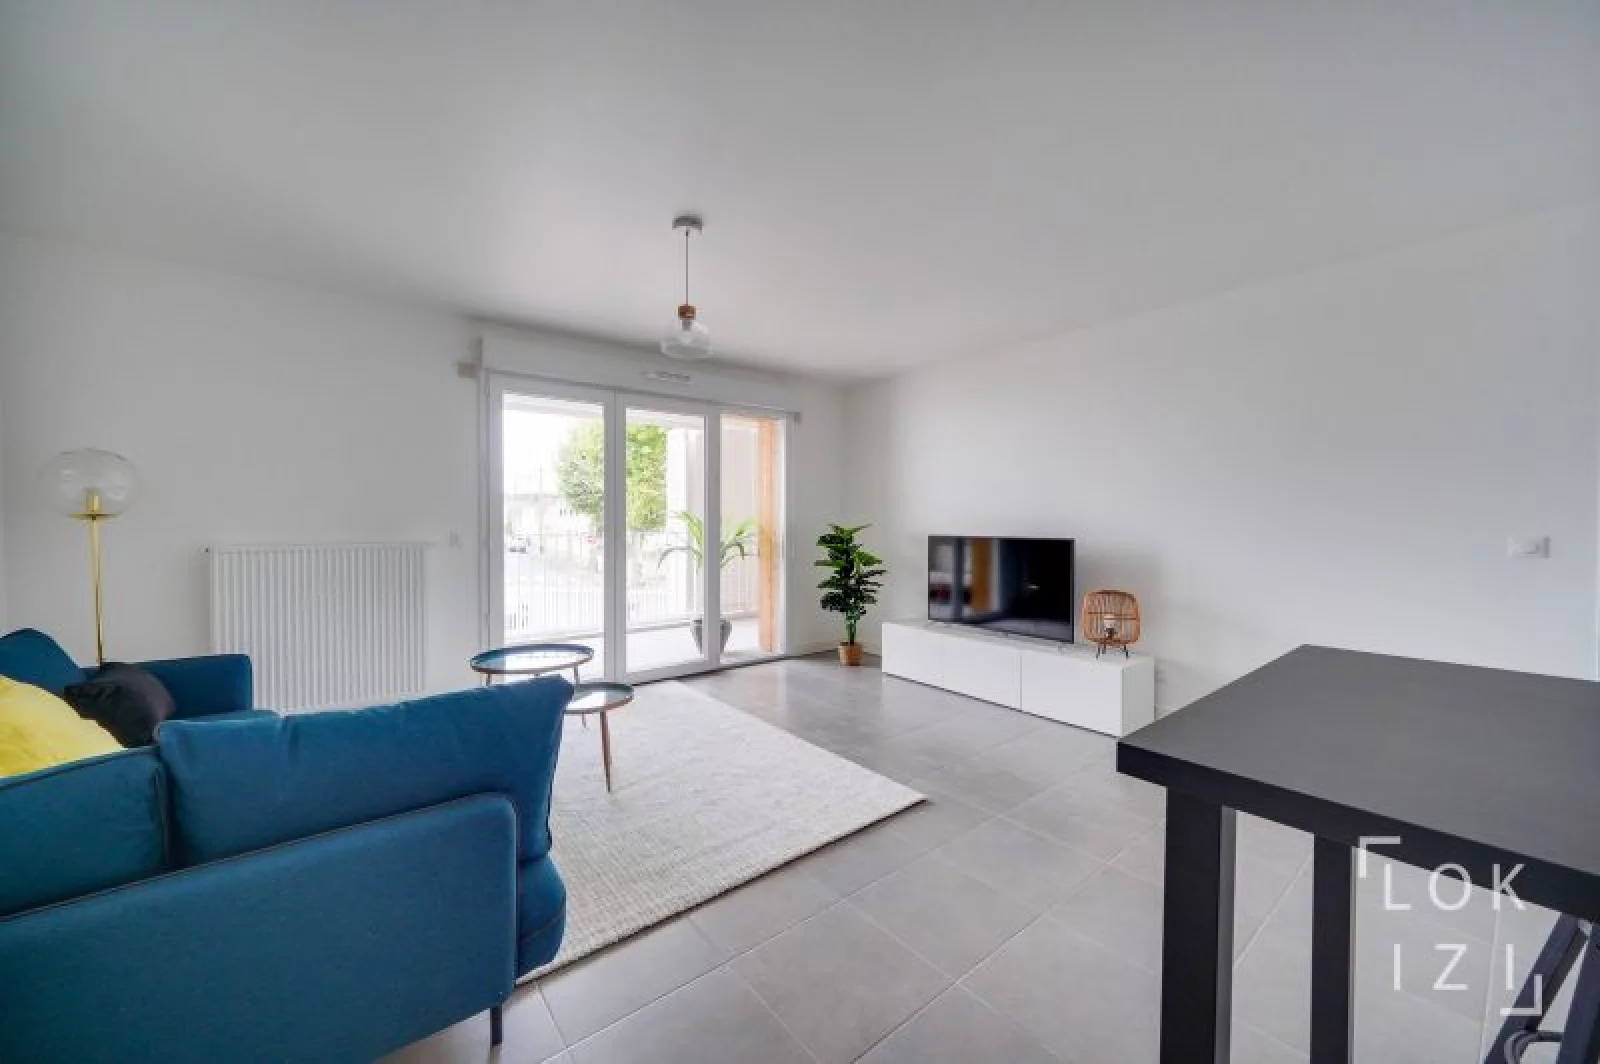 Location appartement meublé 4 pièces 85m²  (Bordeaux - Bacalan)